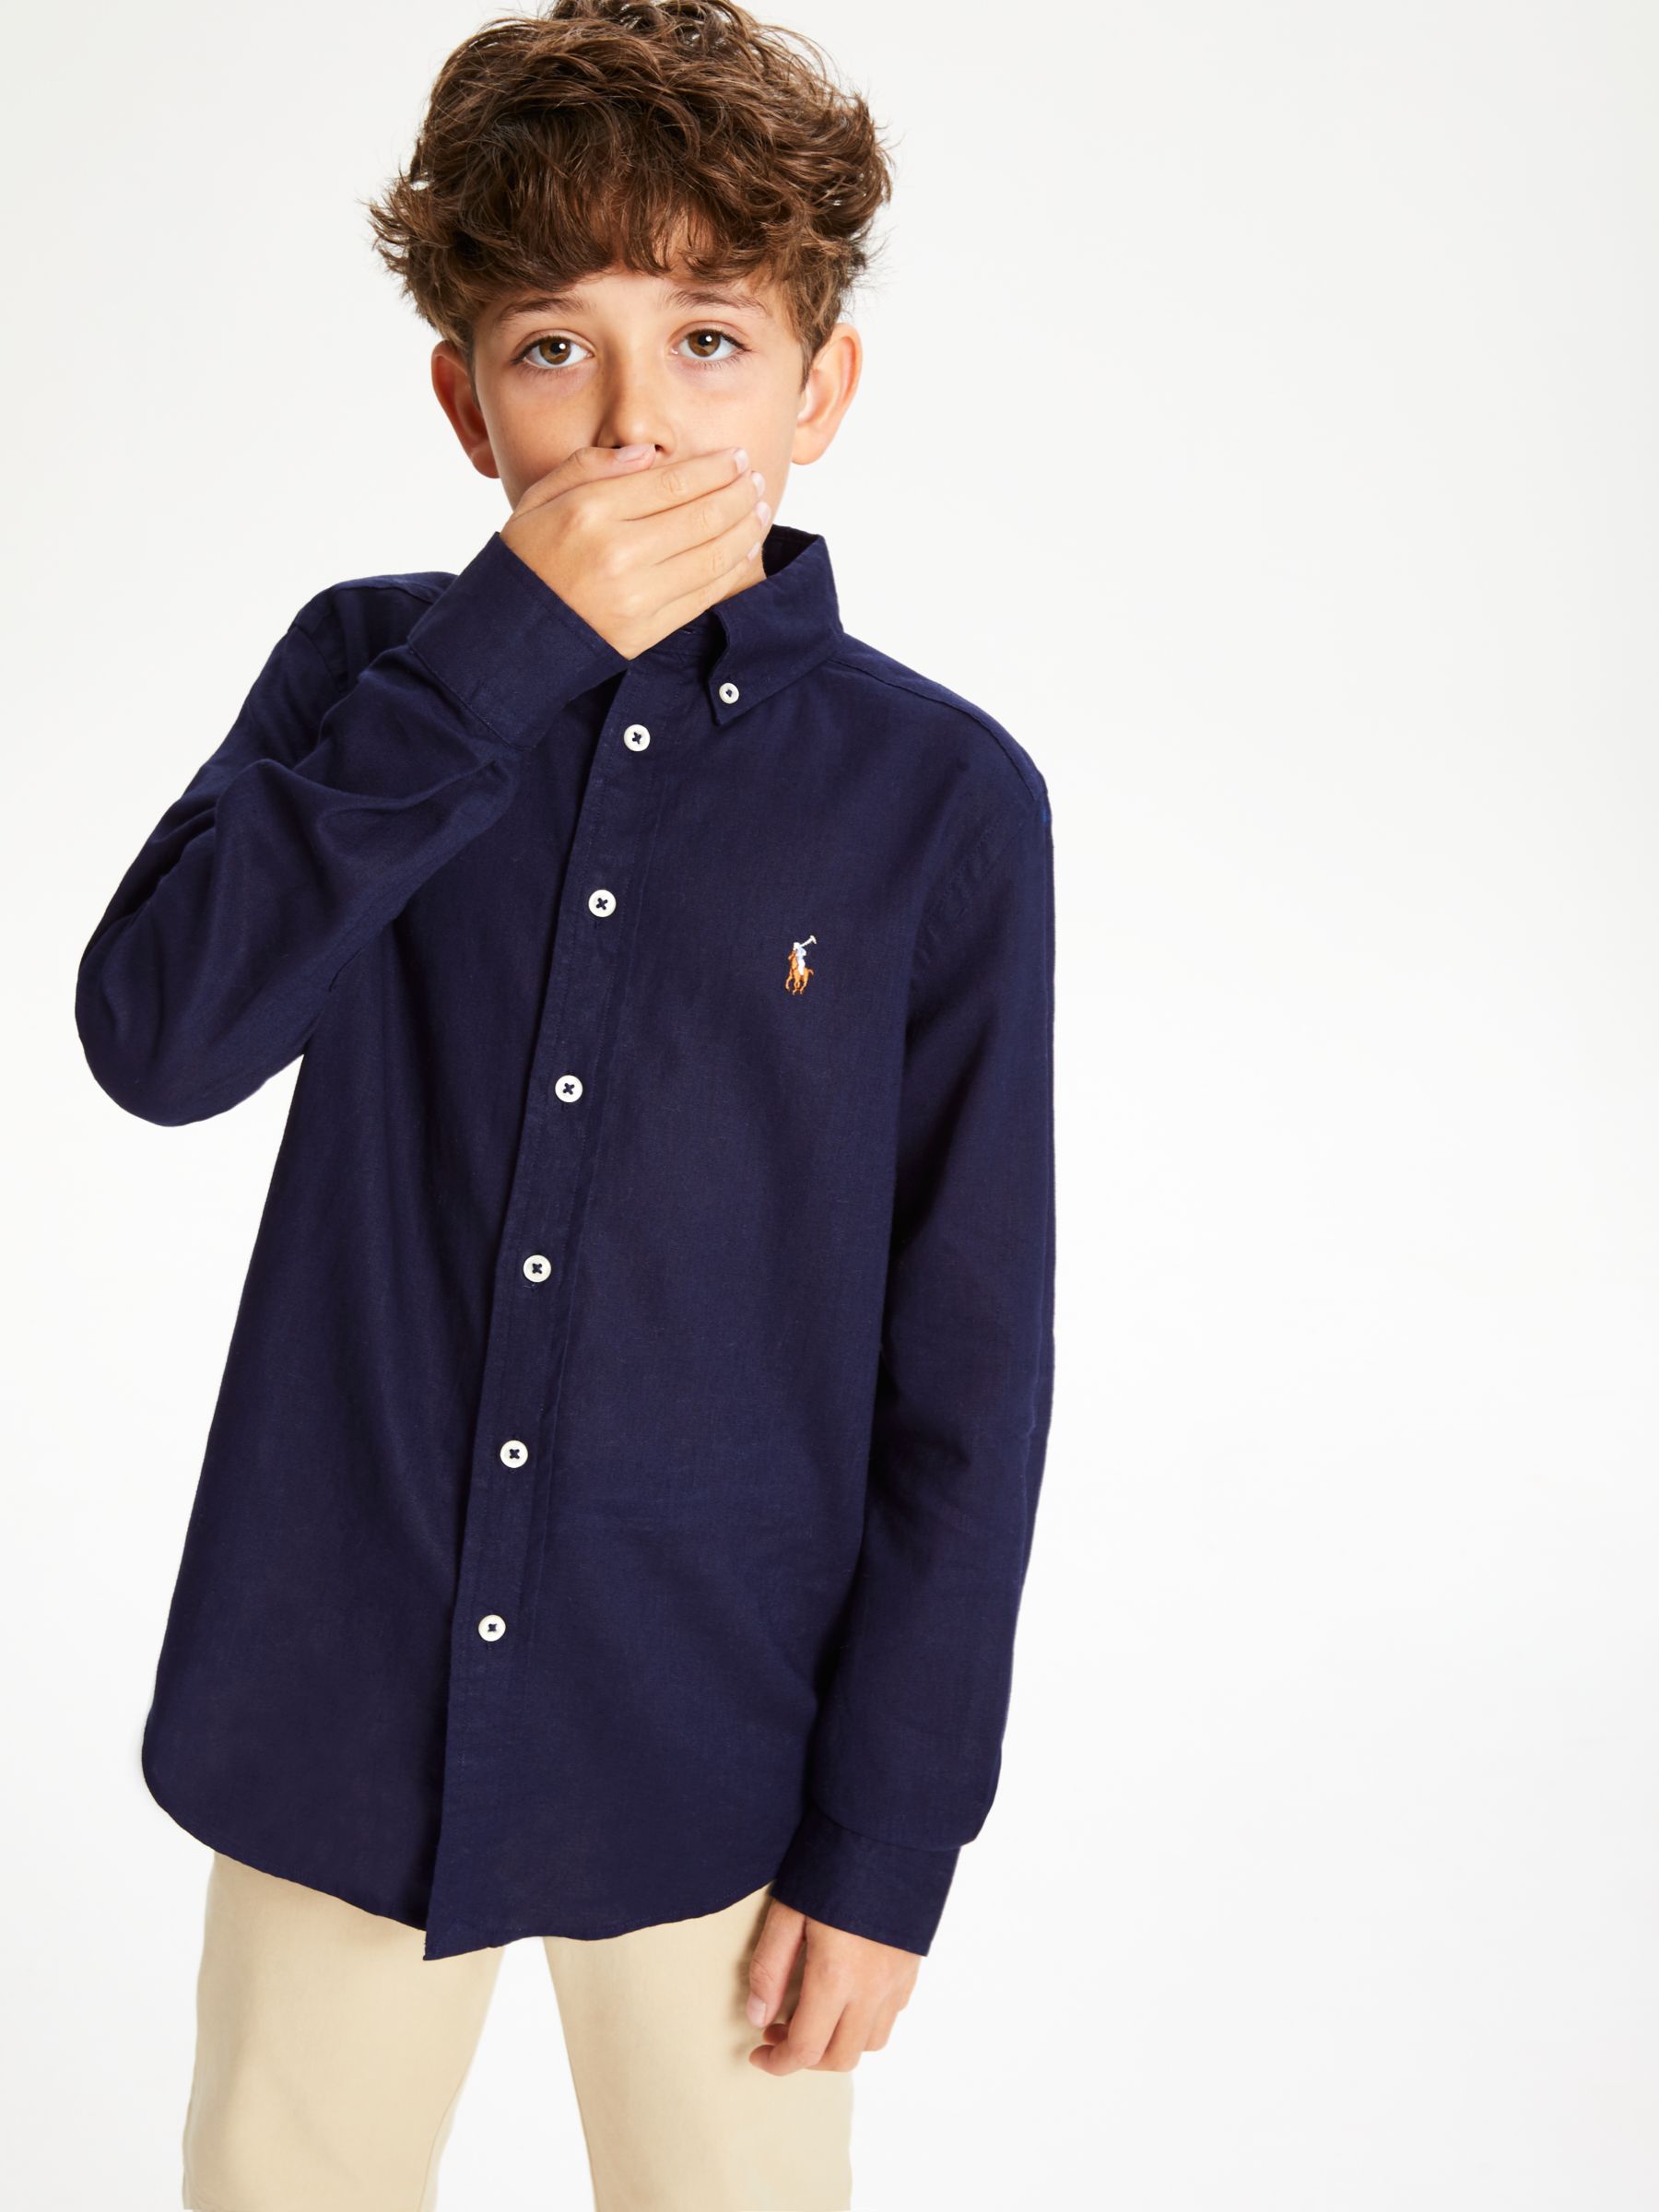 Polo Ralph Lauren Boys' Shirt, Navy at 